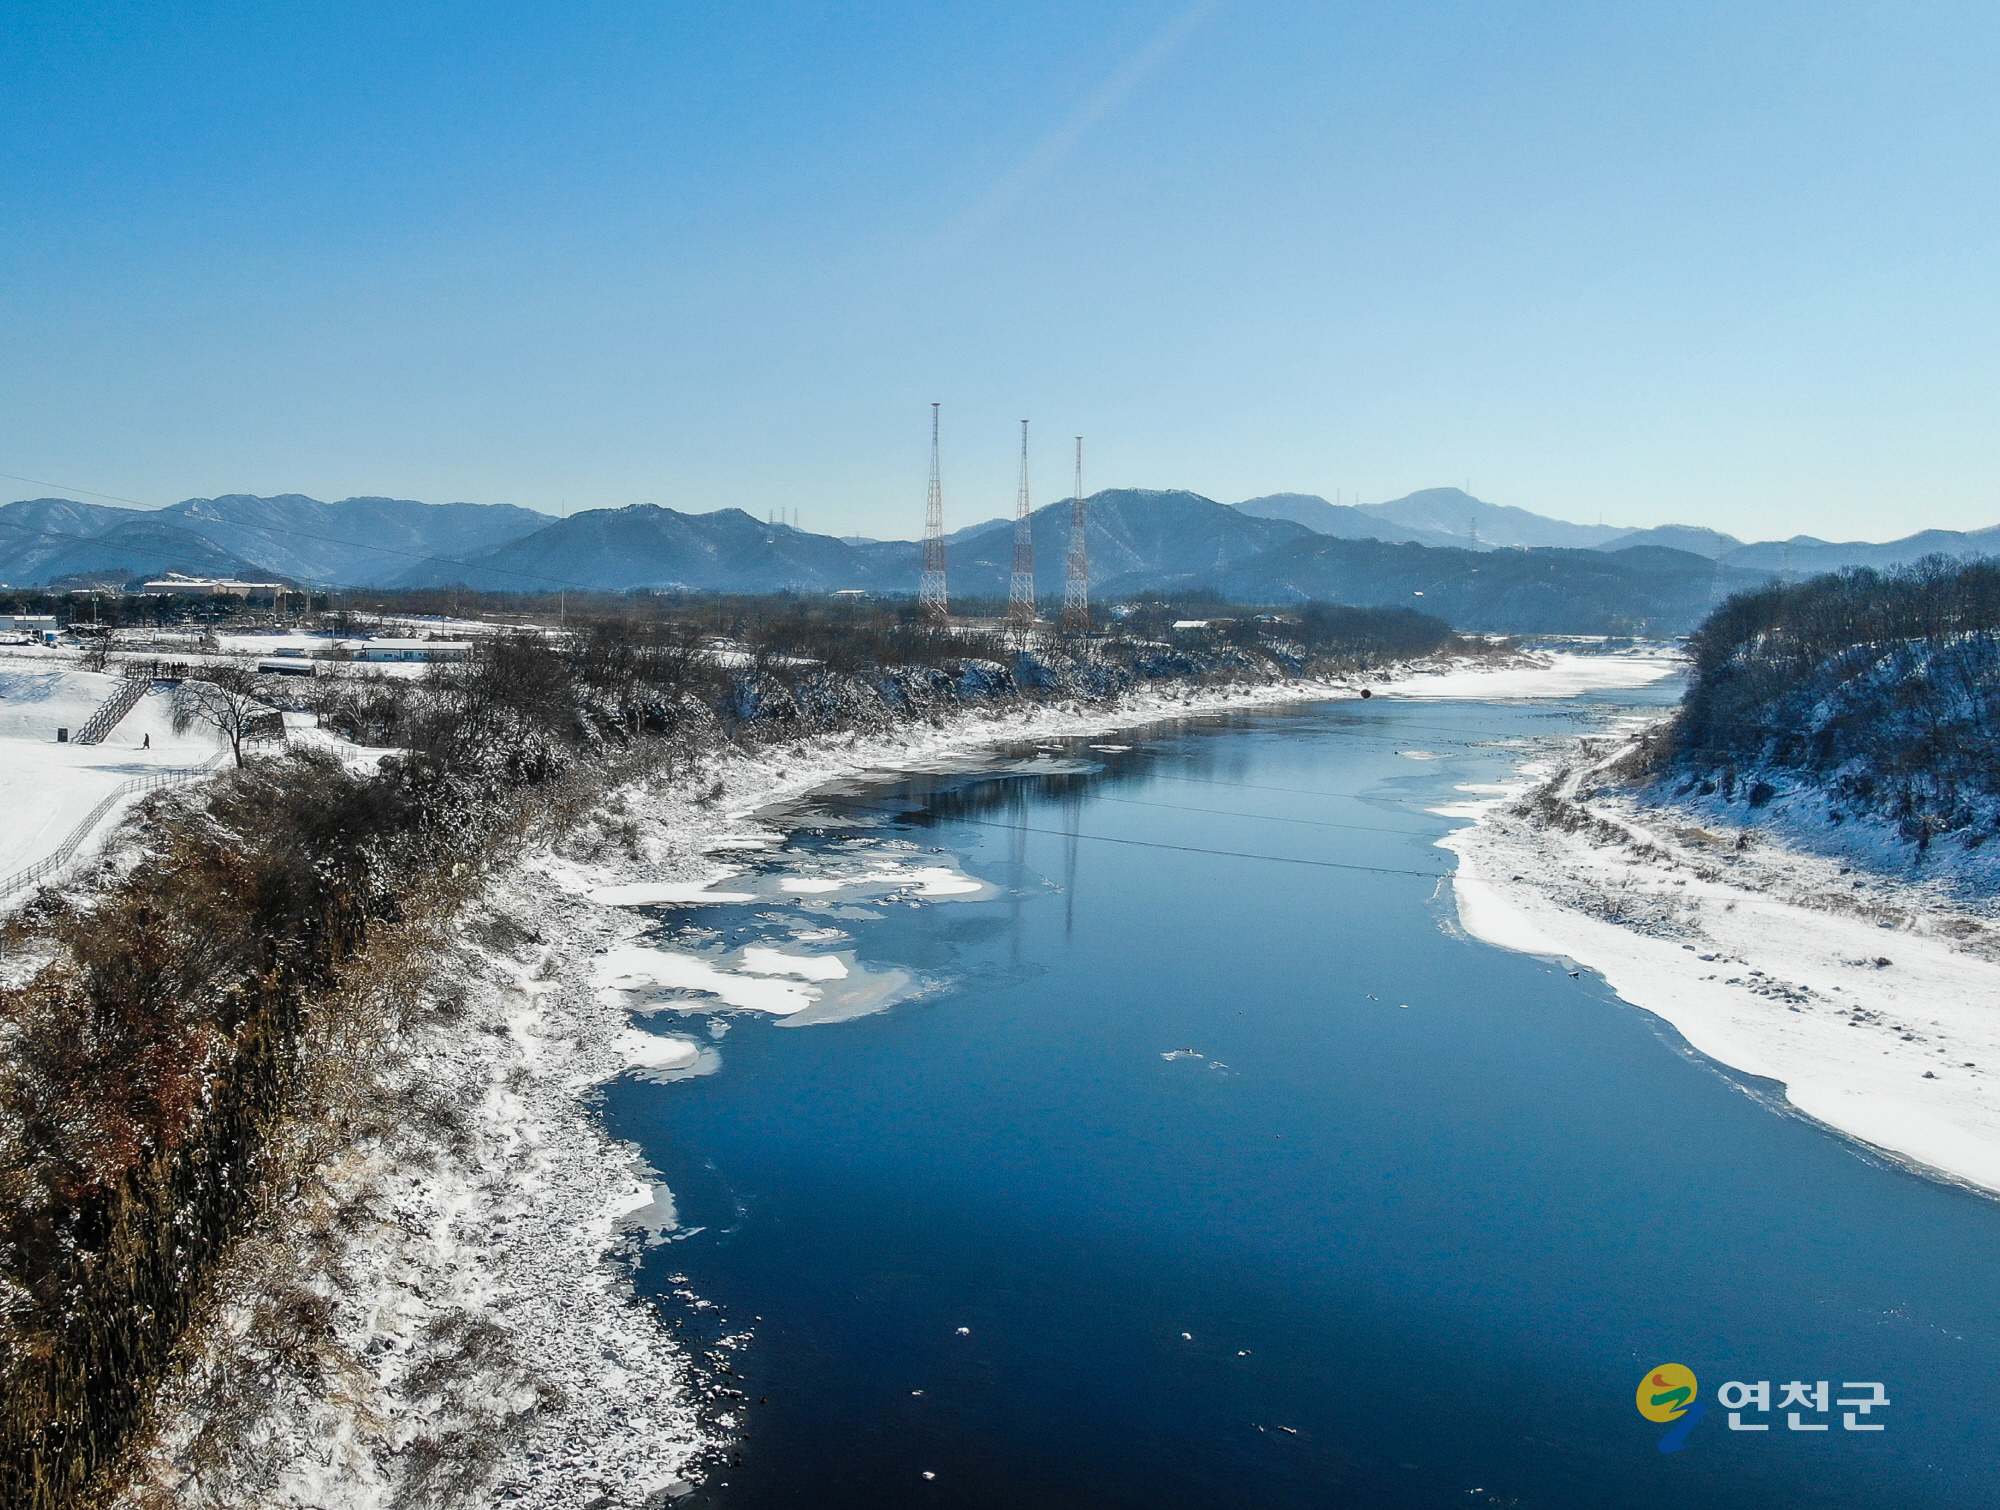 연천 임진강변의 겨울풍경 이미지 1 - 본문에 자세한설명을 제공합니다.